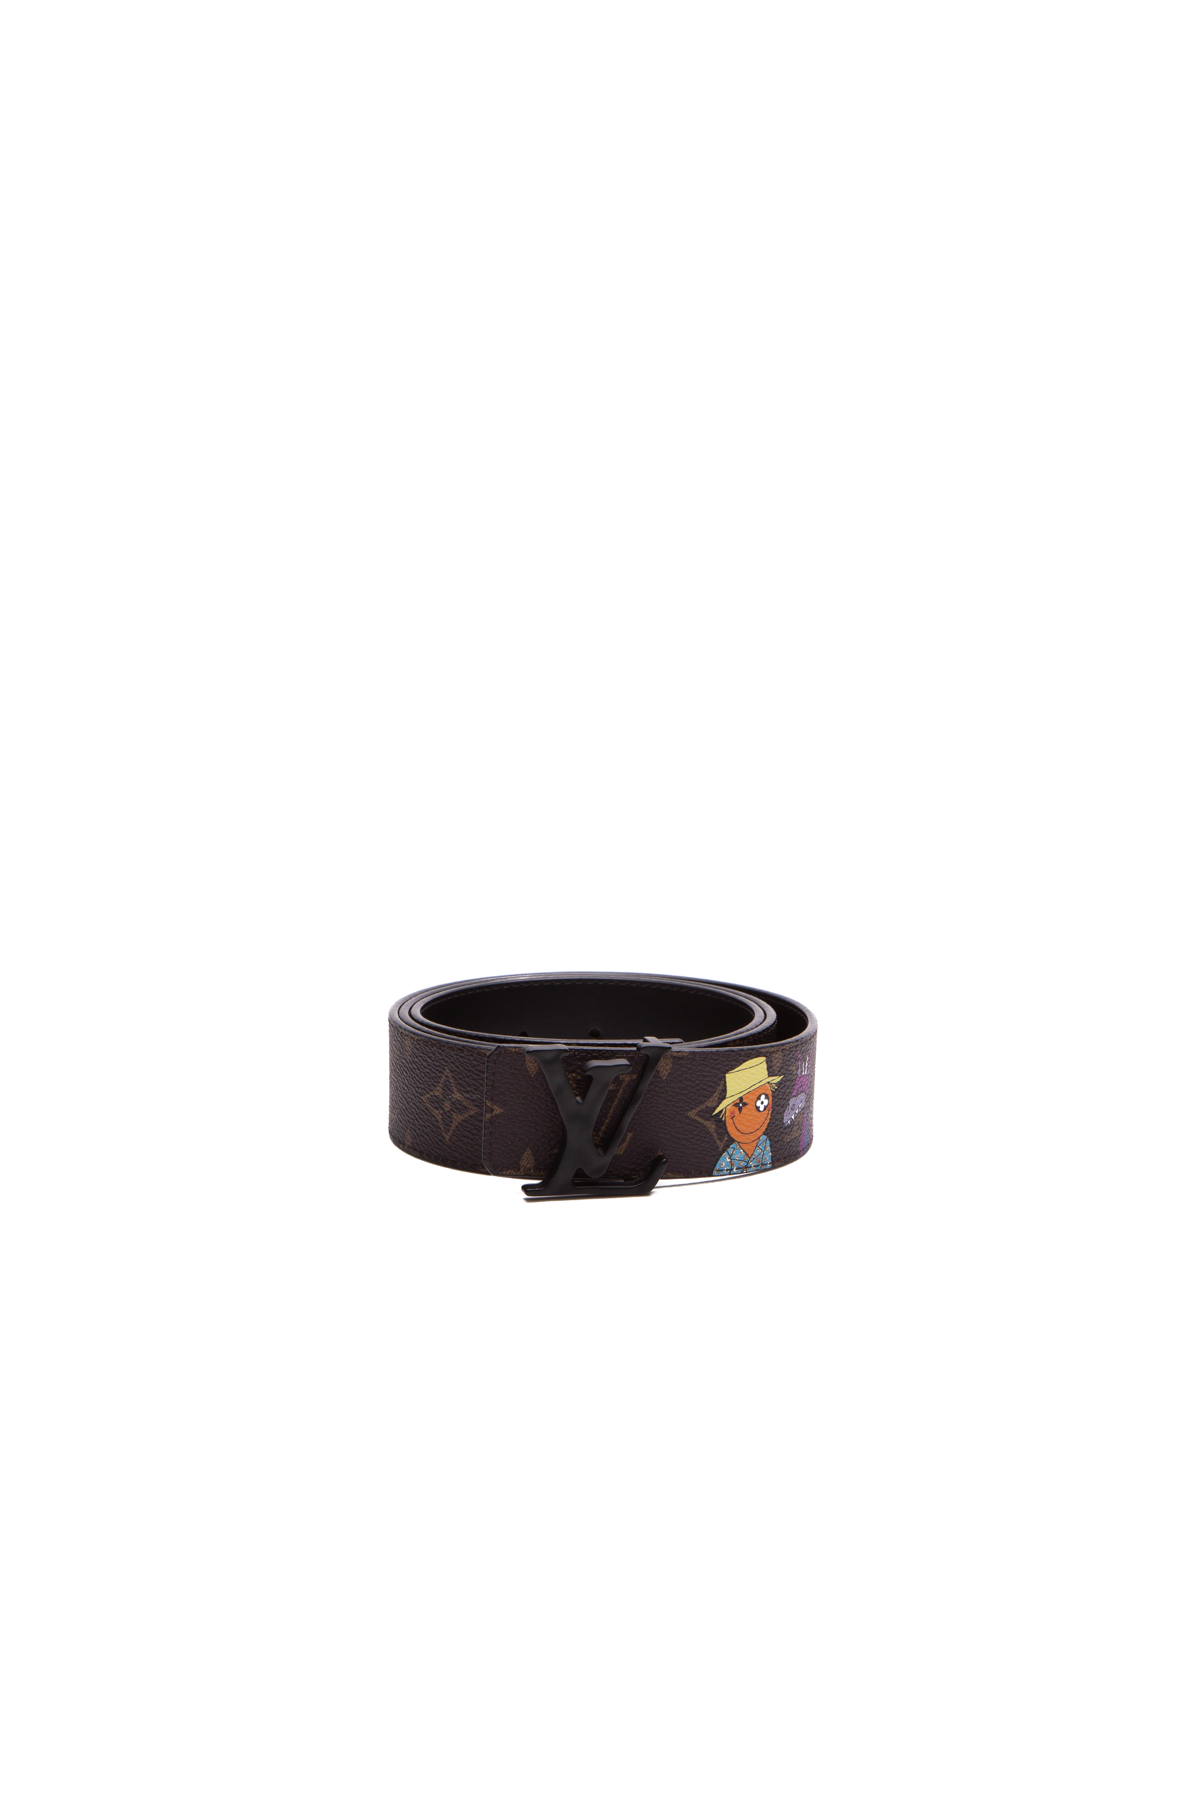 Louis Vuitton white mens LV belt. $490.00  Louis vuitton belt, Lv belt,  White louis vuitton